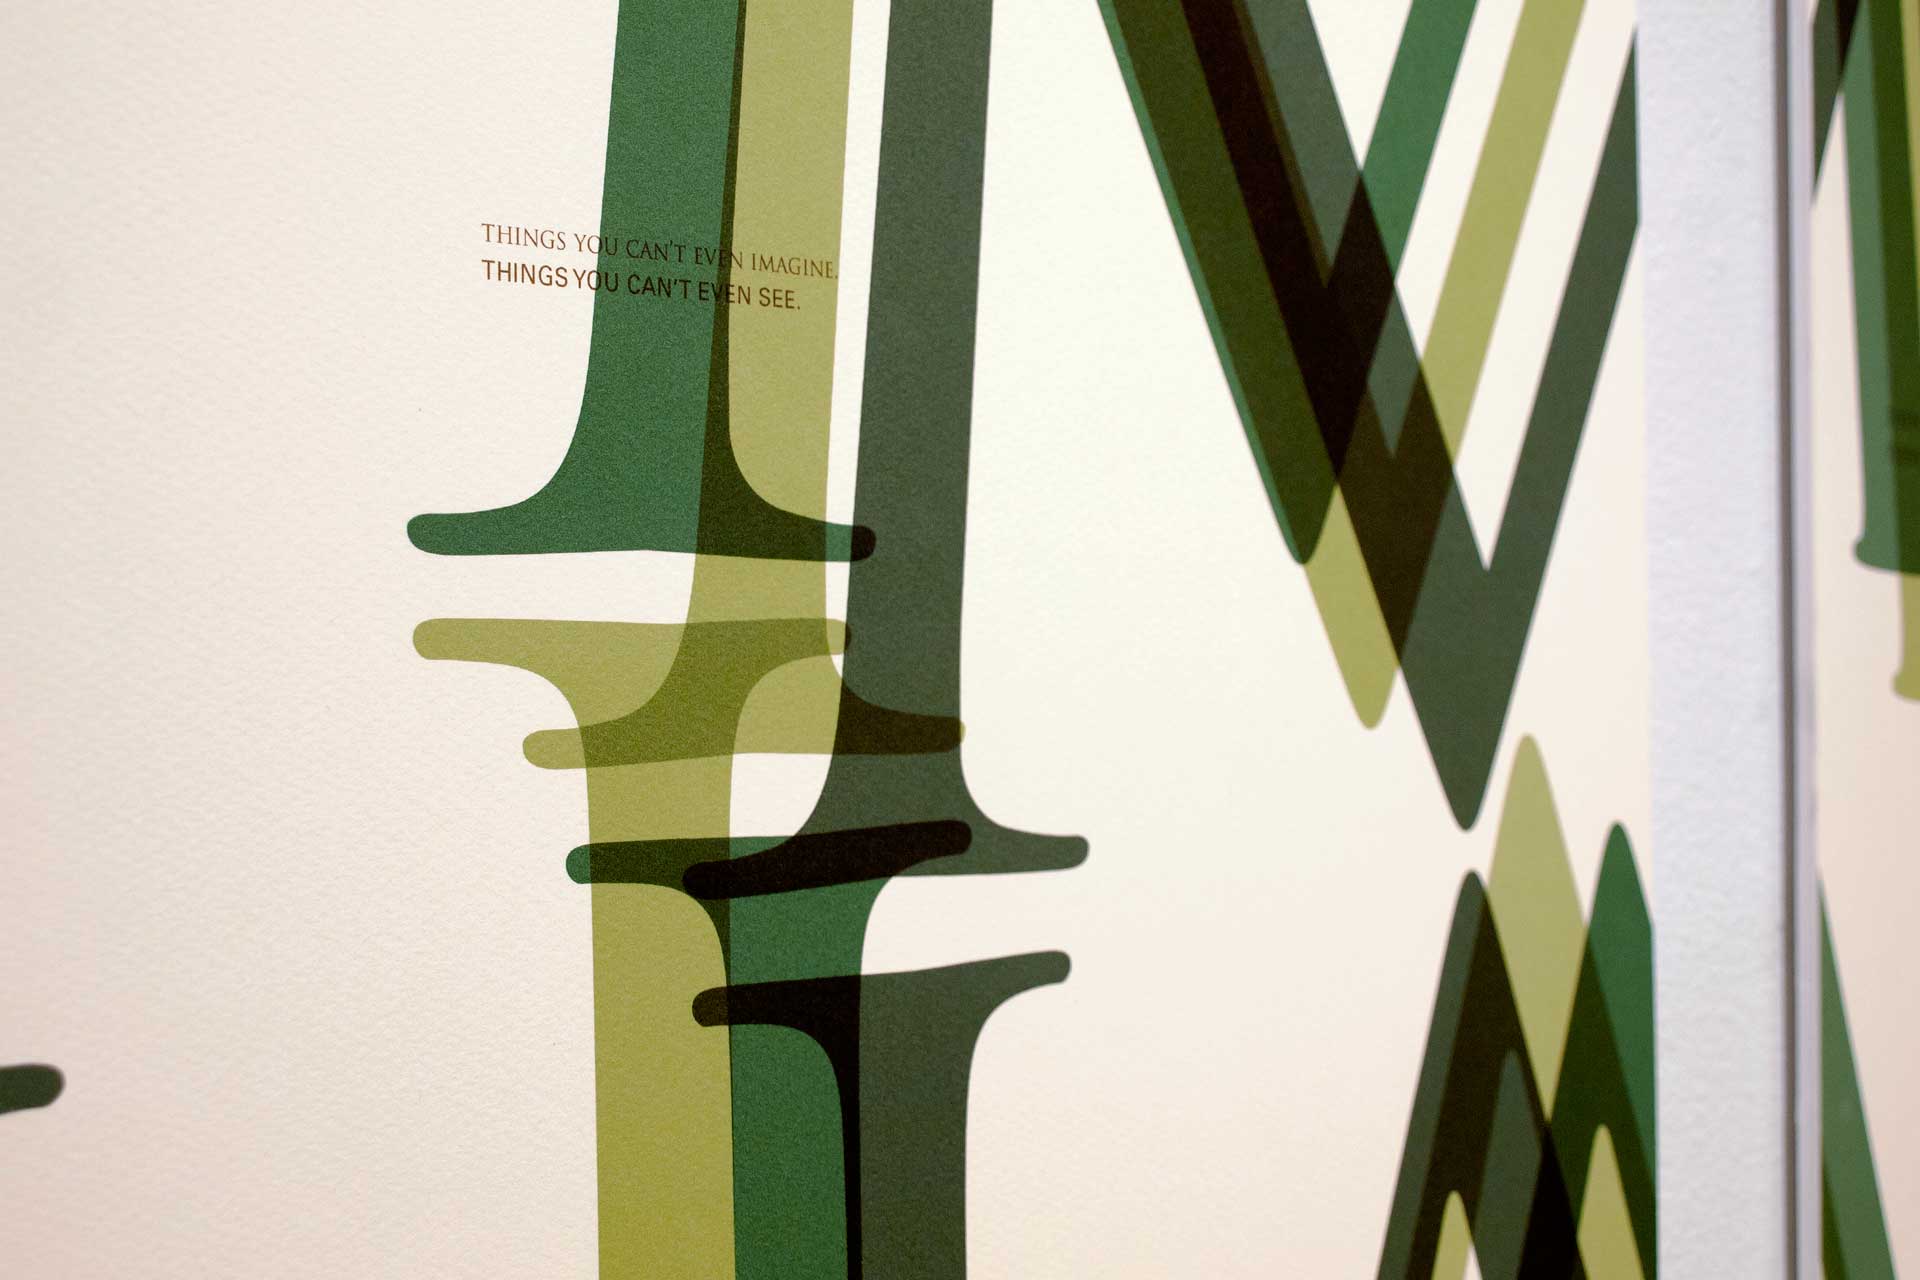 Jumanji Typopgraphic Poster